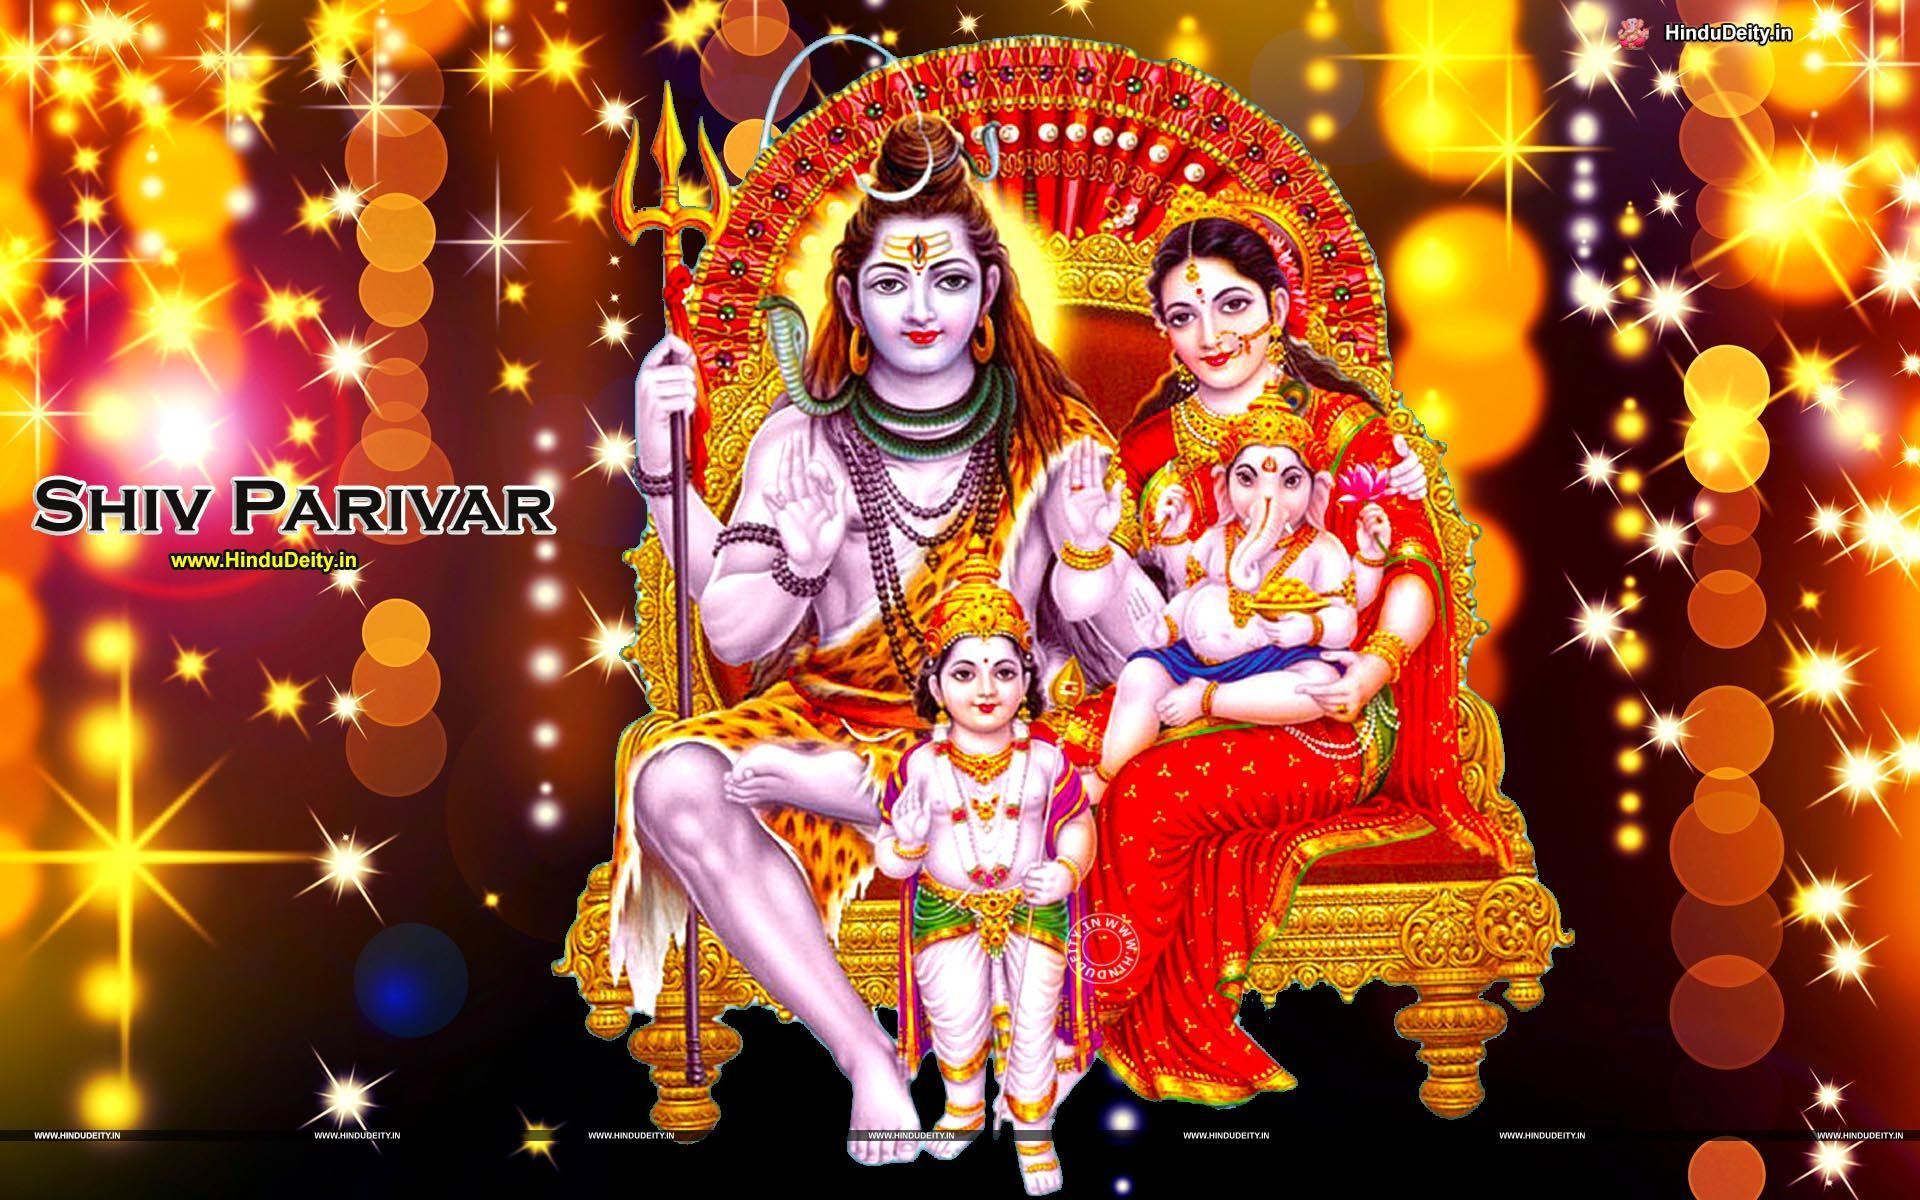 Lord Shiva Wallpapers,Shiv Parivar Images,Natraja Photos,Shiva Tandav  Pictures,Hindu Gods Backgrounds,Rudra Pictures,Shiva 3D Wallpapers free